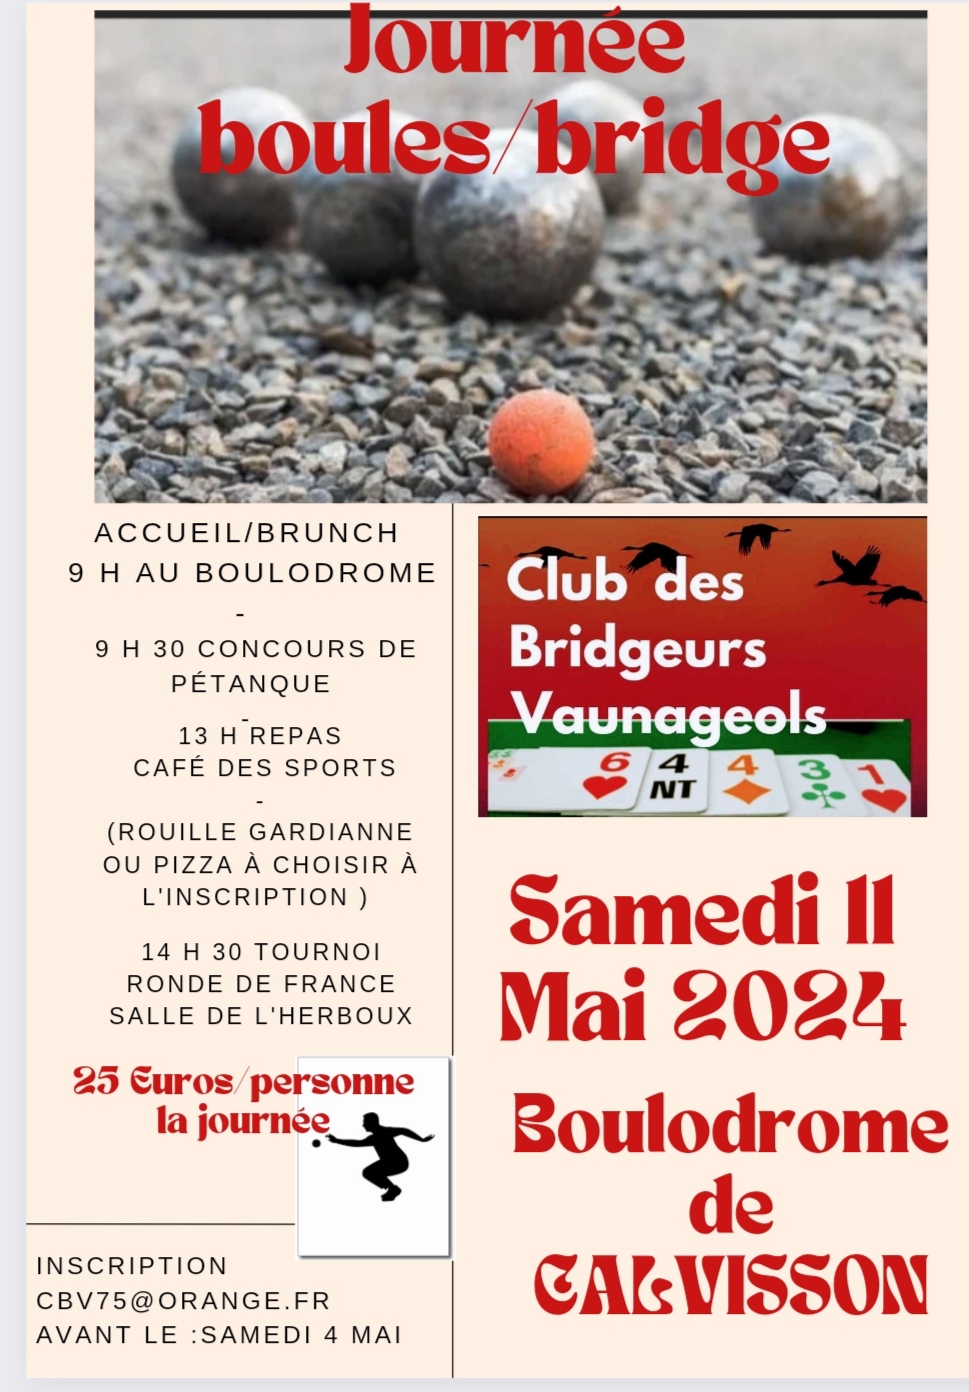 image - Tournoi boule/bridge